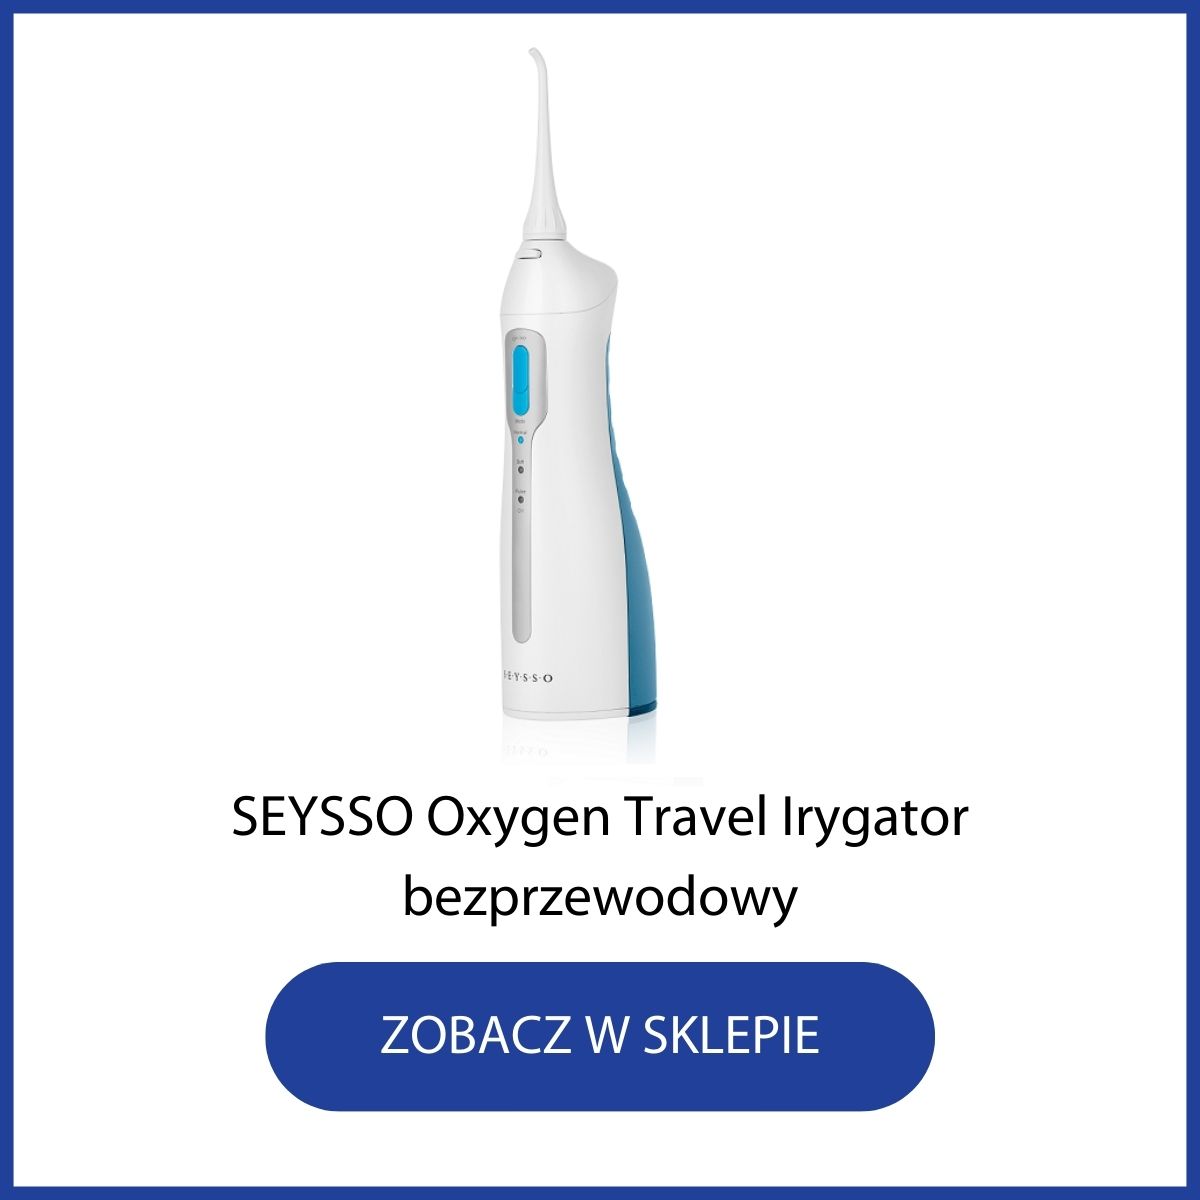 Irygator bezprzewodowy Seysso Oxygen Travel